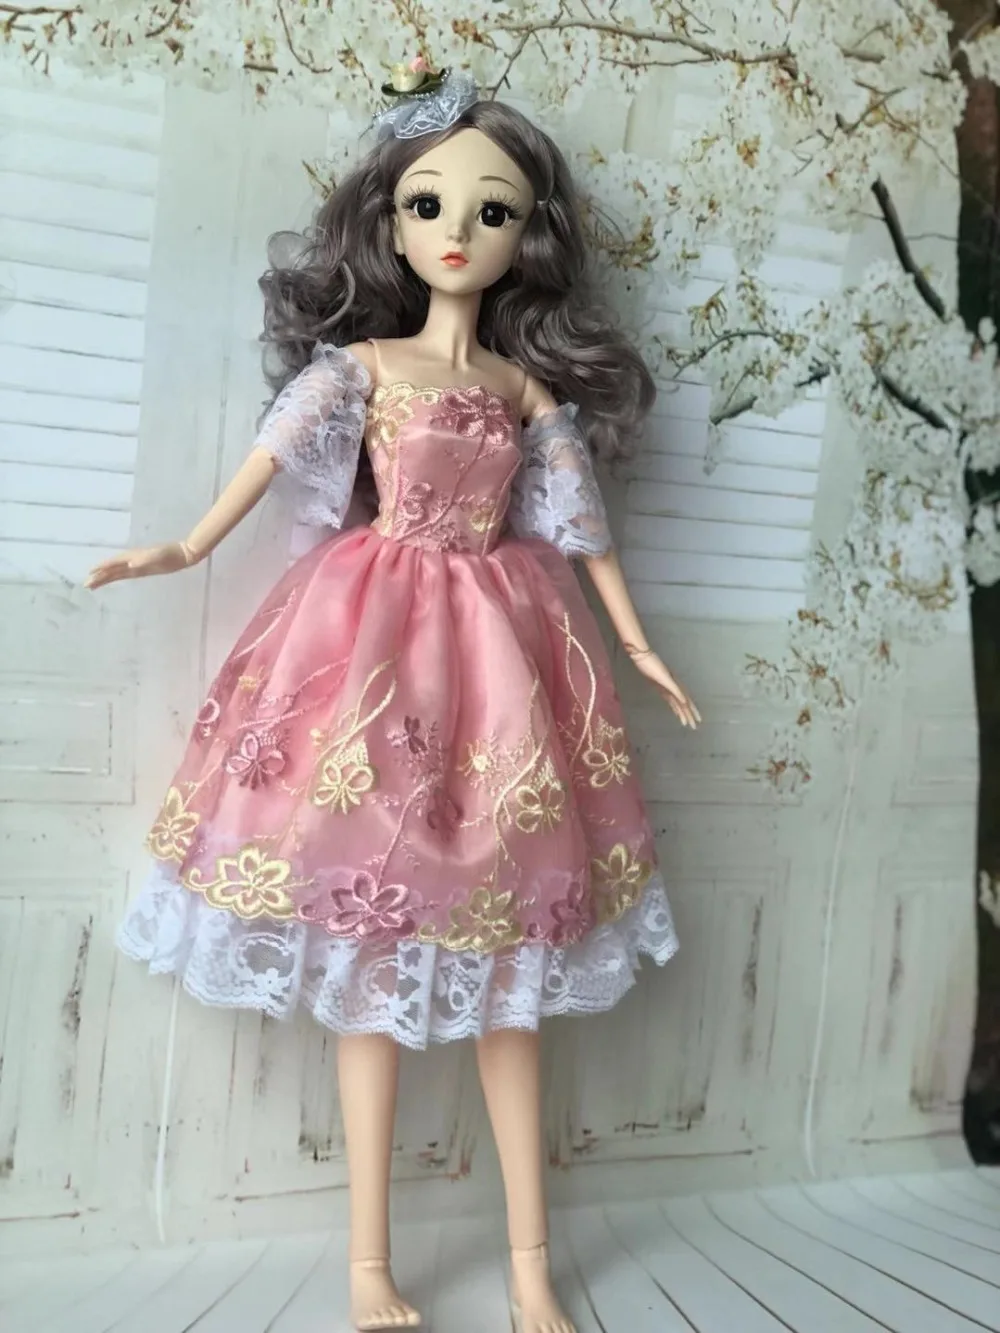 60 см Bjd кукла Модная девушка 20 подвижных суставов романтическая принцесса реалистичные детские куклы для девочек игрушки для детей подарки на день рождения